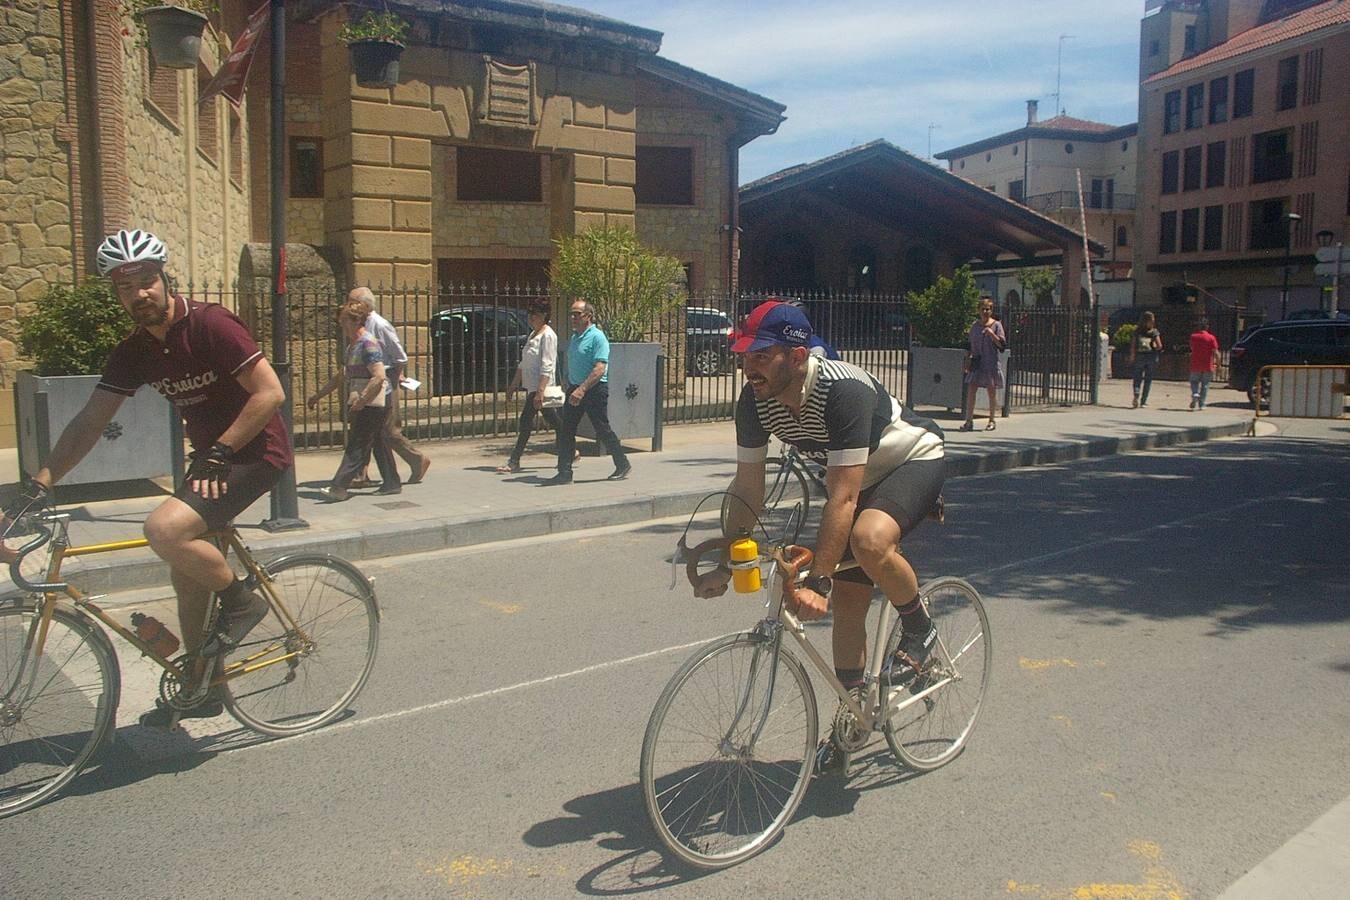 Cenicero acogió la Eroica Hispania, una prueba de ciclismo clásico en la que los aficionados a esta modalidad de ciclismo recorrieron diferentes trayectos por la Rioja Alta; disfrutando del paisaje, el vino, la cultura y la gastronomía